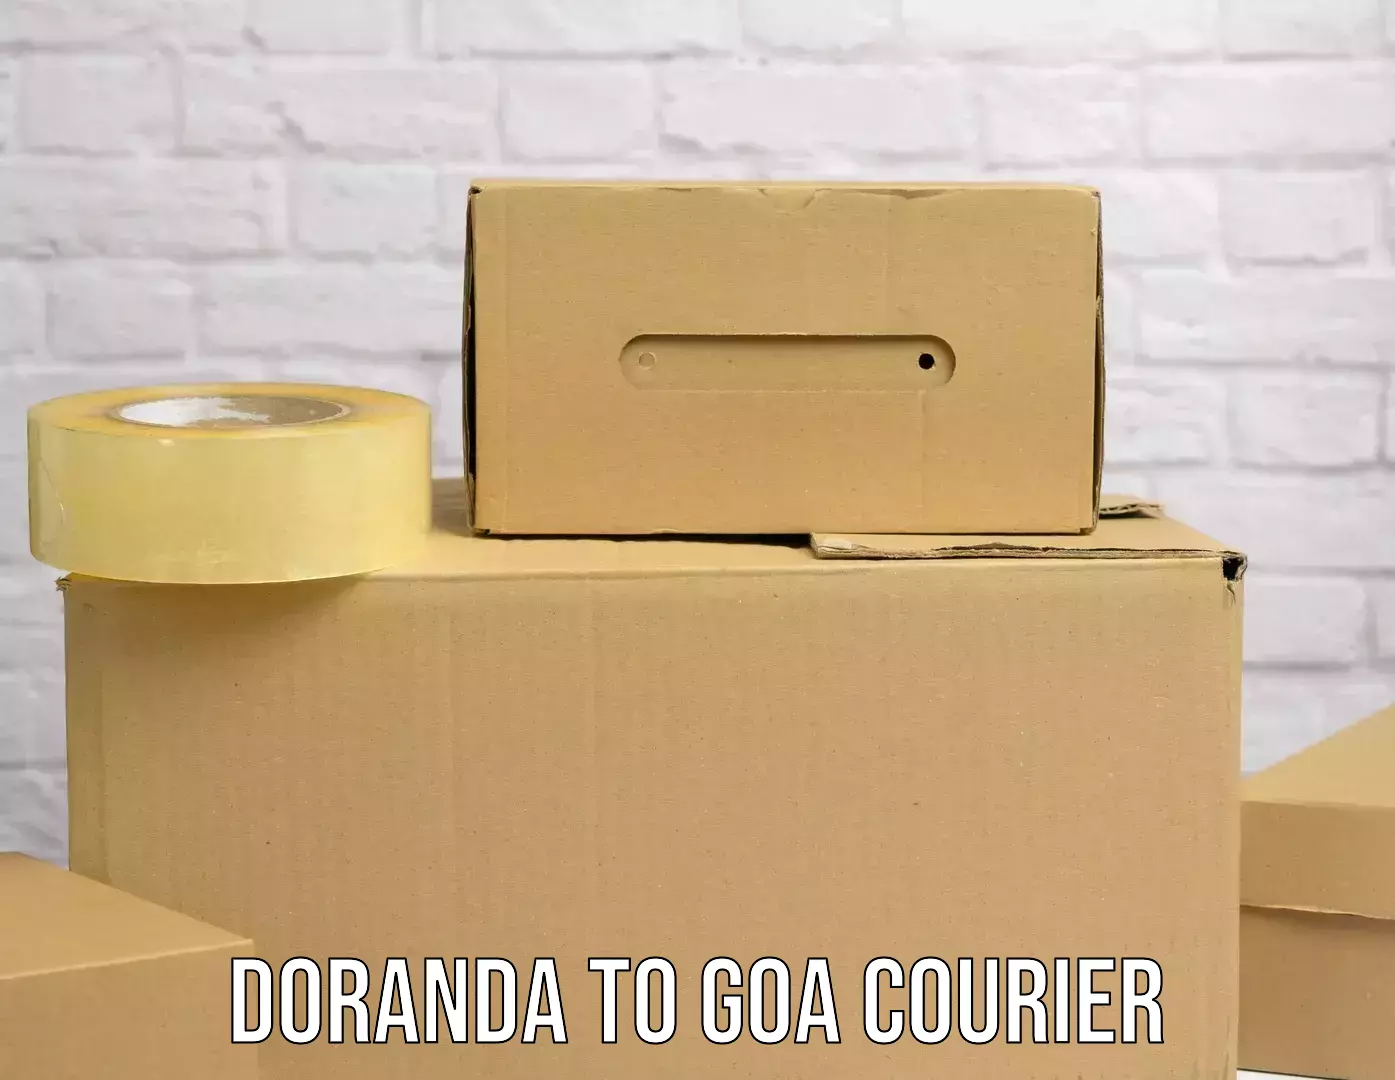 Fast shipping solutions in Doranda to Vasco da Gama